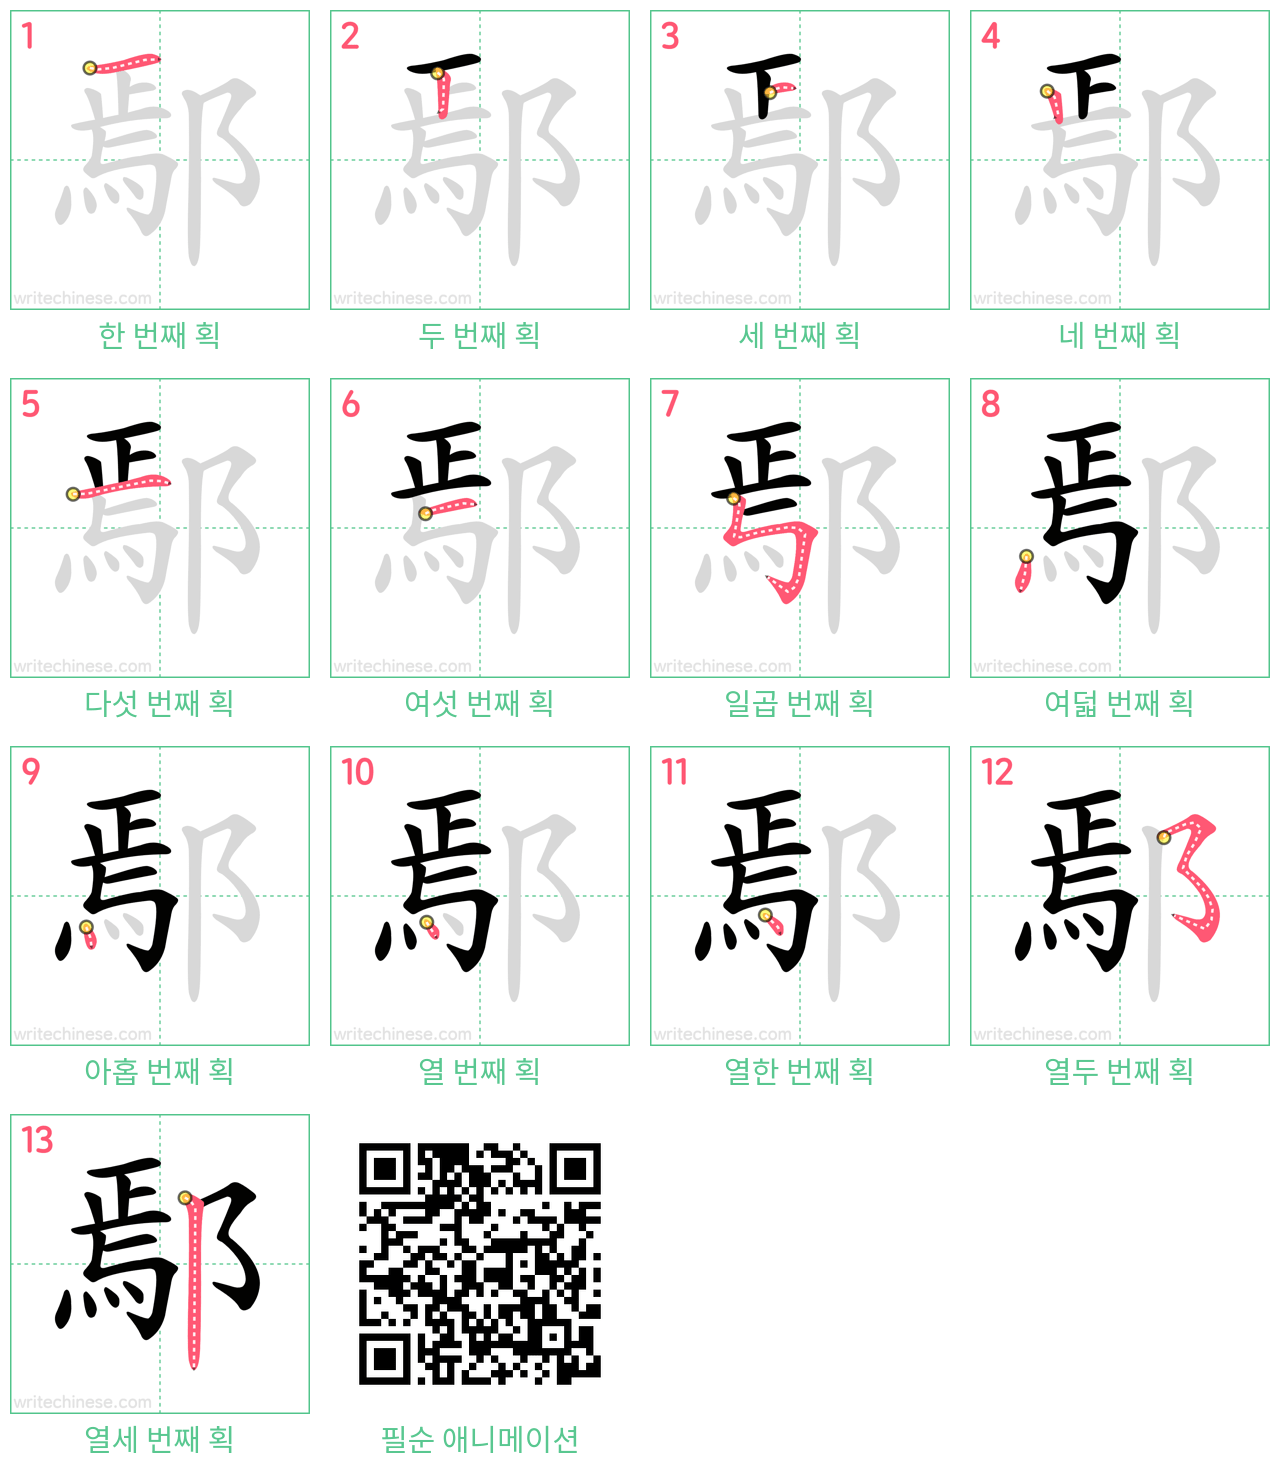 鄢 step-by-step stroke order diagrams